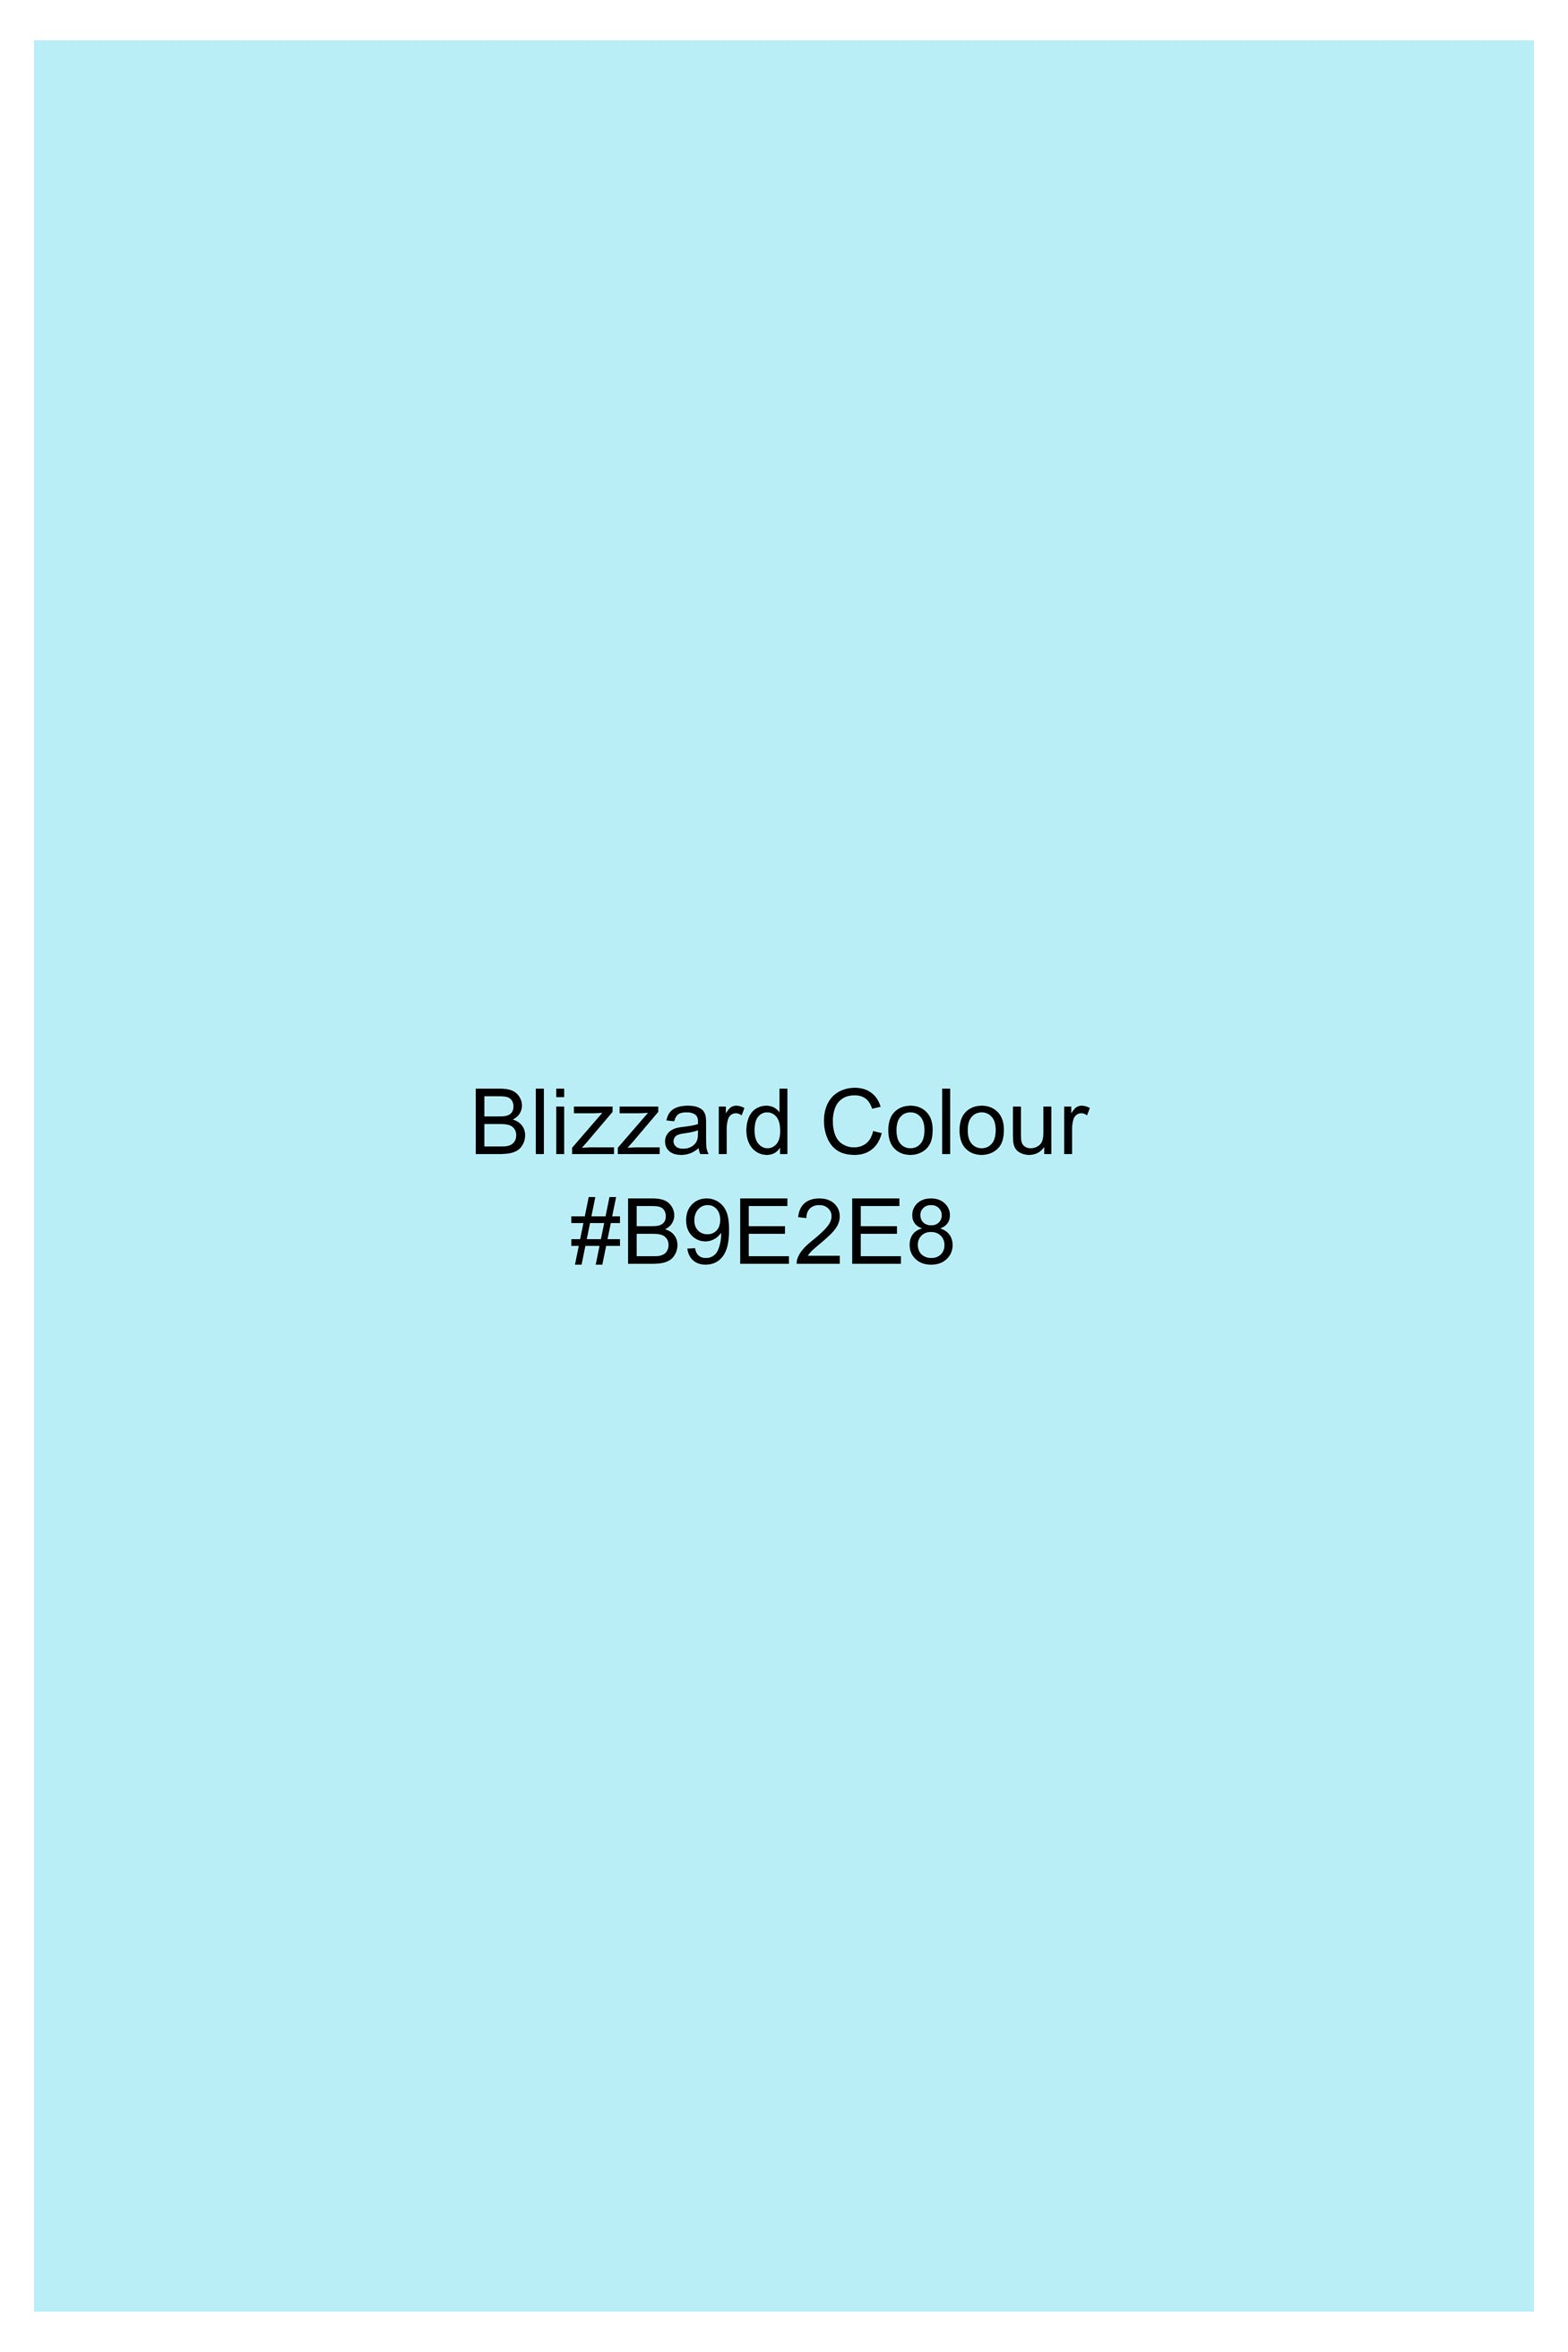 Blizzard Blue Royal Oxford Button Down Shirt 11910-BD-38, 11910-BD-H-38, 11910-BD-39, 11910-BD-H-39, 11910-BD-40, 11910-BD-H-40, 11910-BD-42, 11910-BD-H-42, 11910-BD-44, 11910-BD-H-44, 11910-BD-46, 11910-BD-H-46, 11910-BD-48, 11910-BD-H-48, 11910-BD-50, 11910-BD-H-50, 11910-BD-52, 11910-BD-H-52